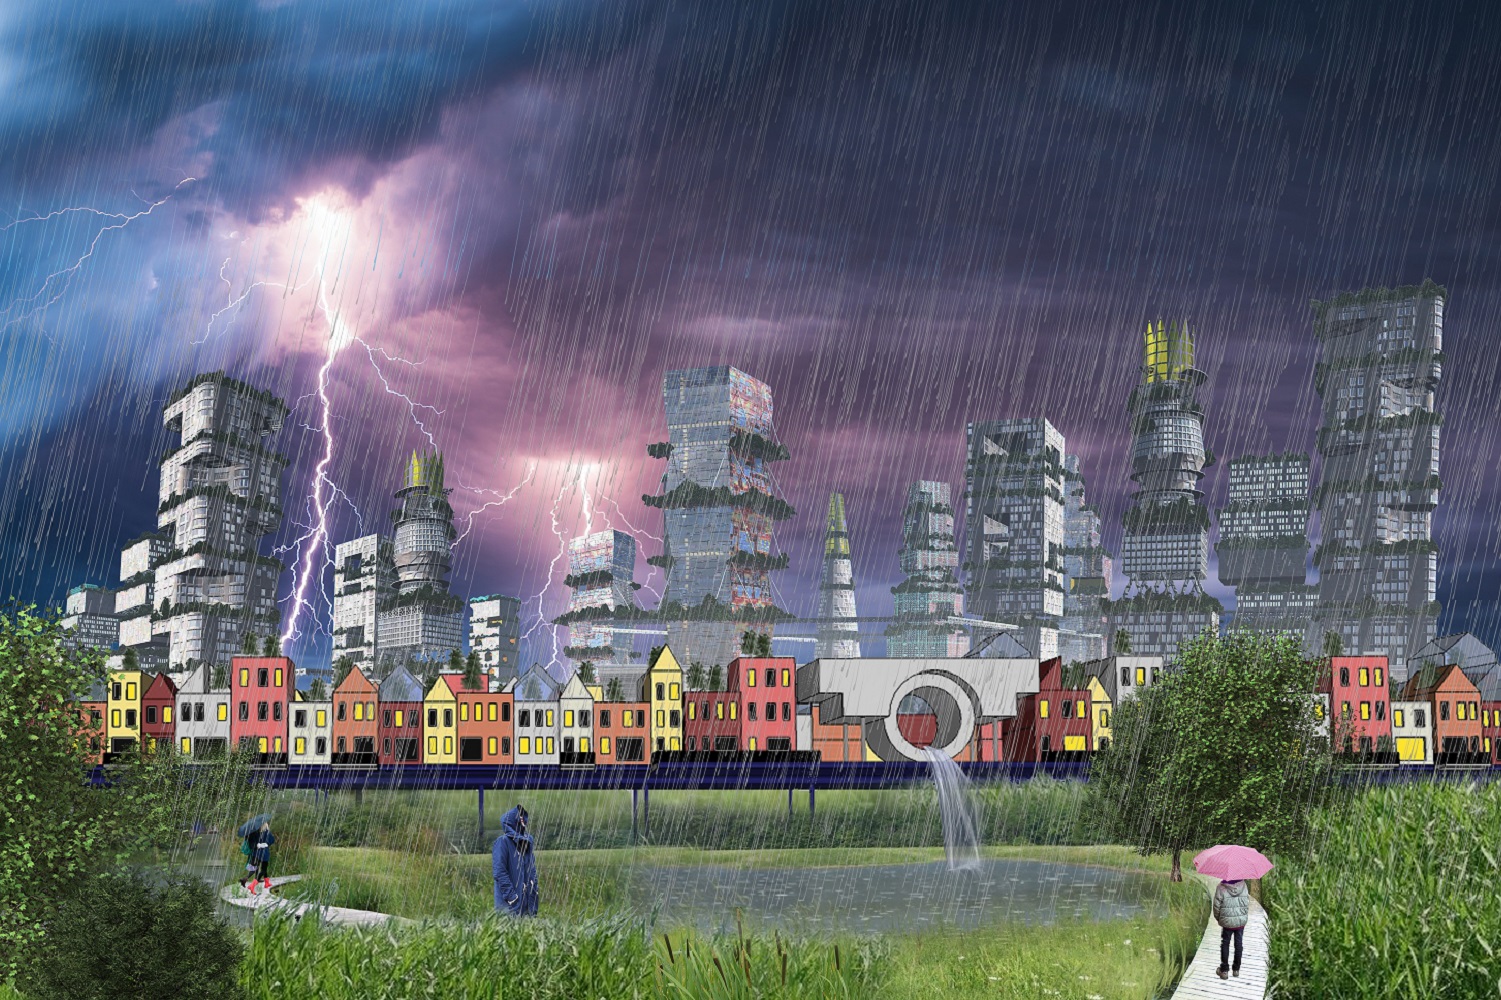 schenkpark met regen in ontwerpstudie stad van de toekomst 